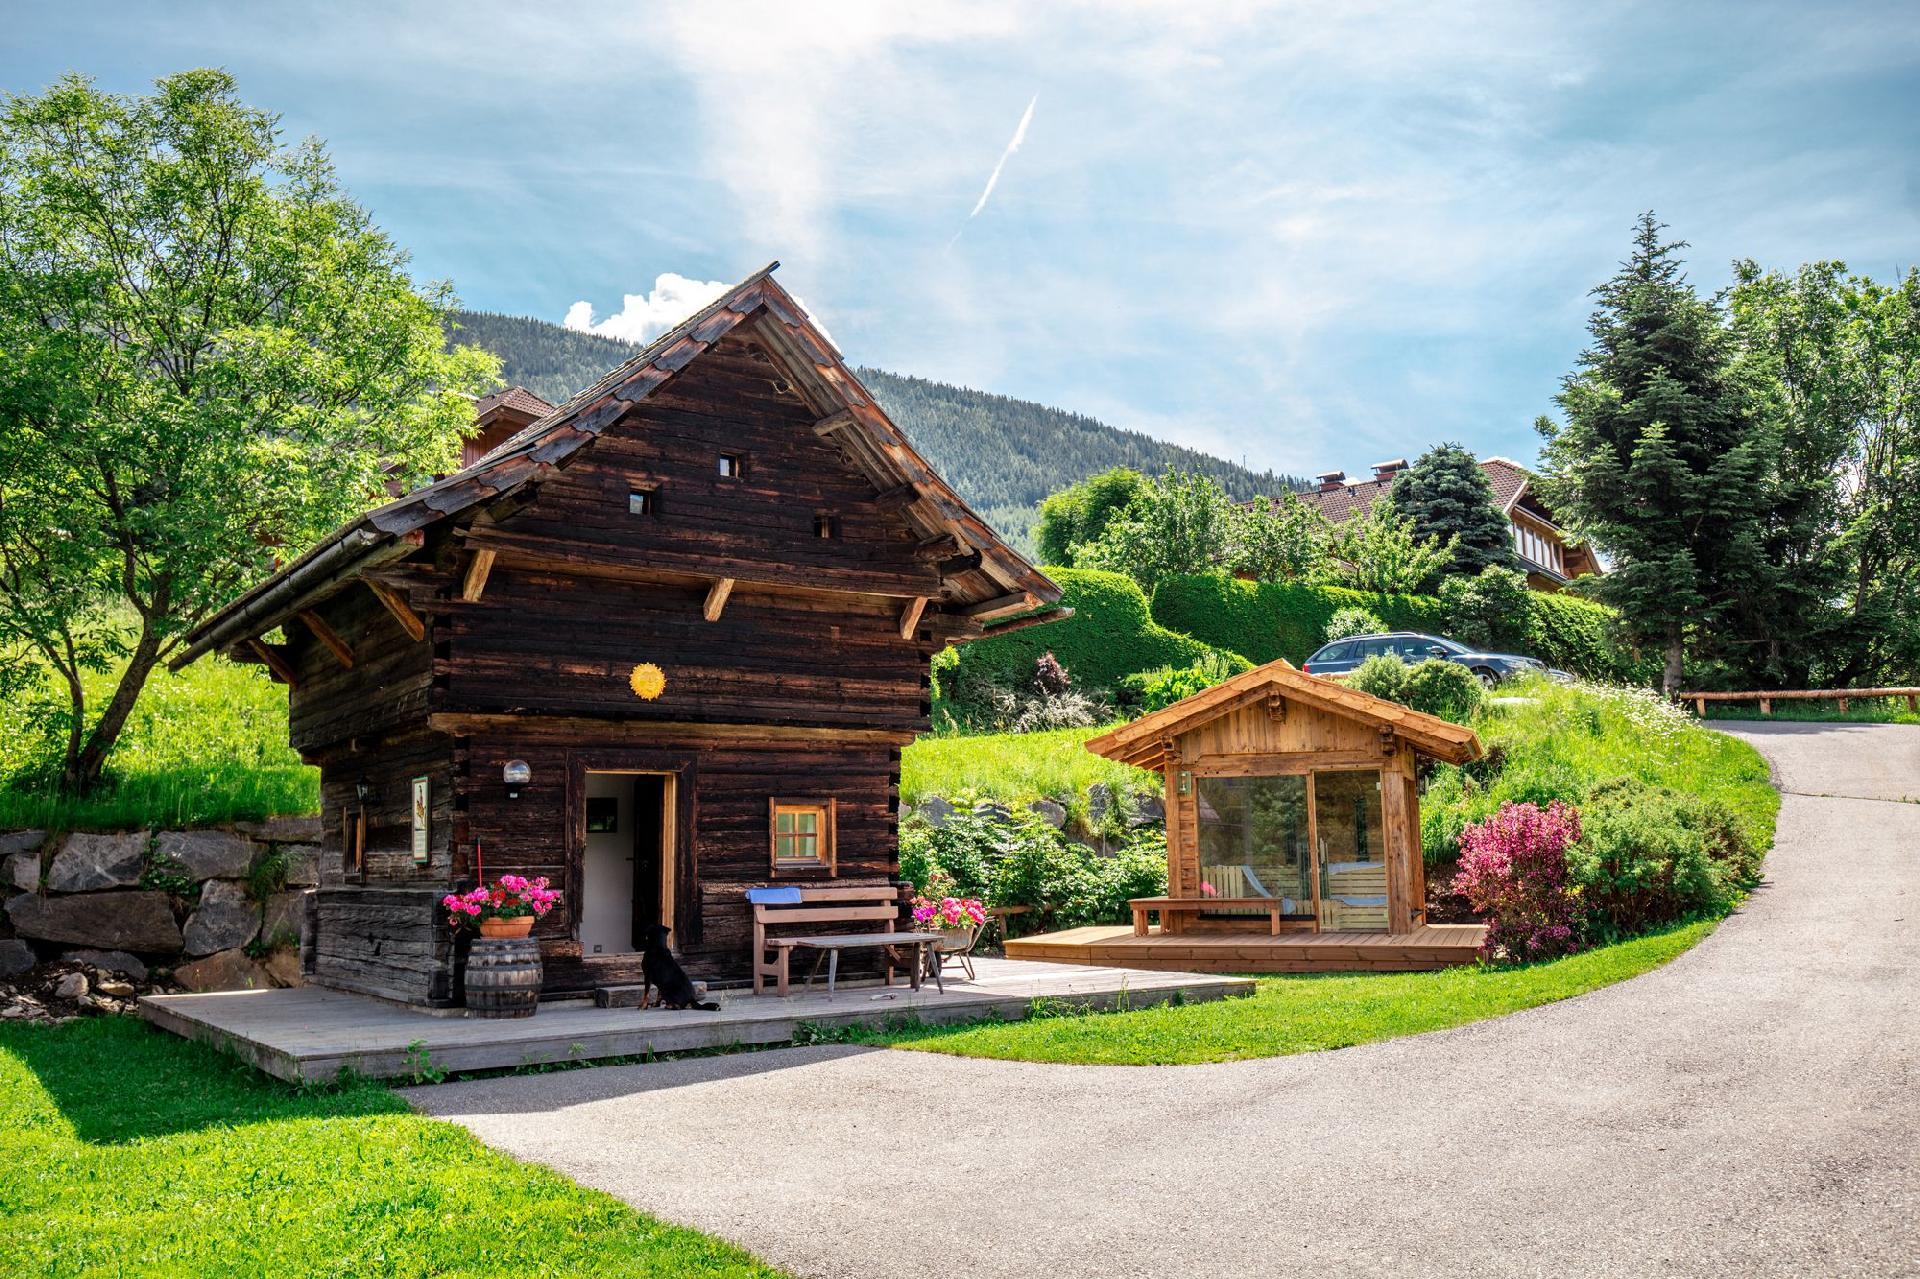 Ferienhaus in Aschbach mit Grill, Terrasse und Gar  in Europa